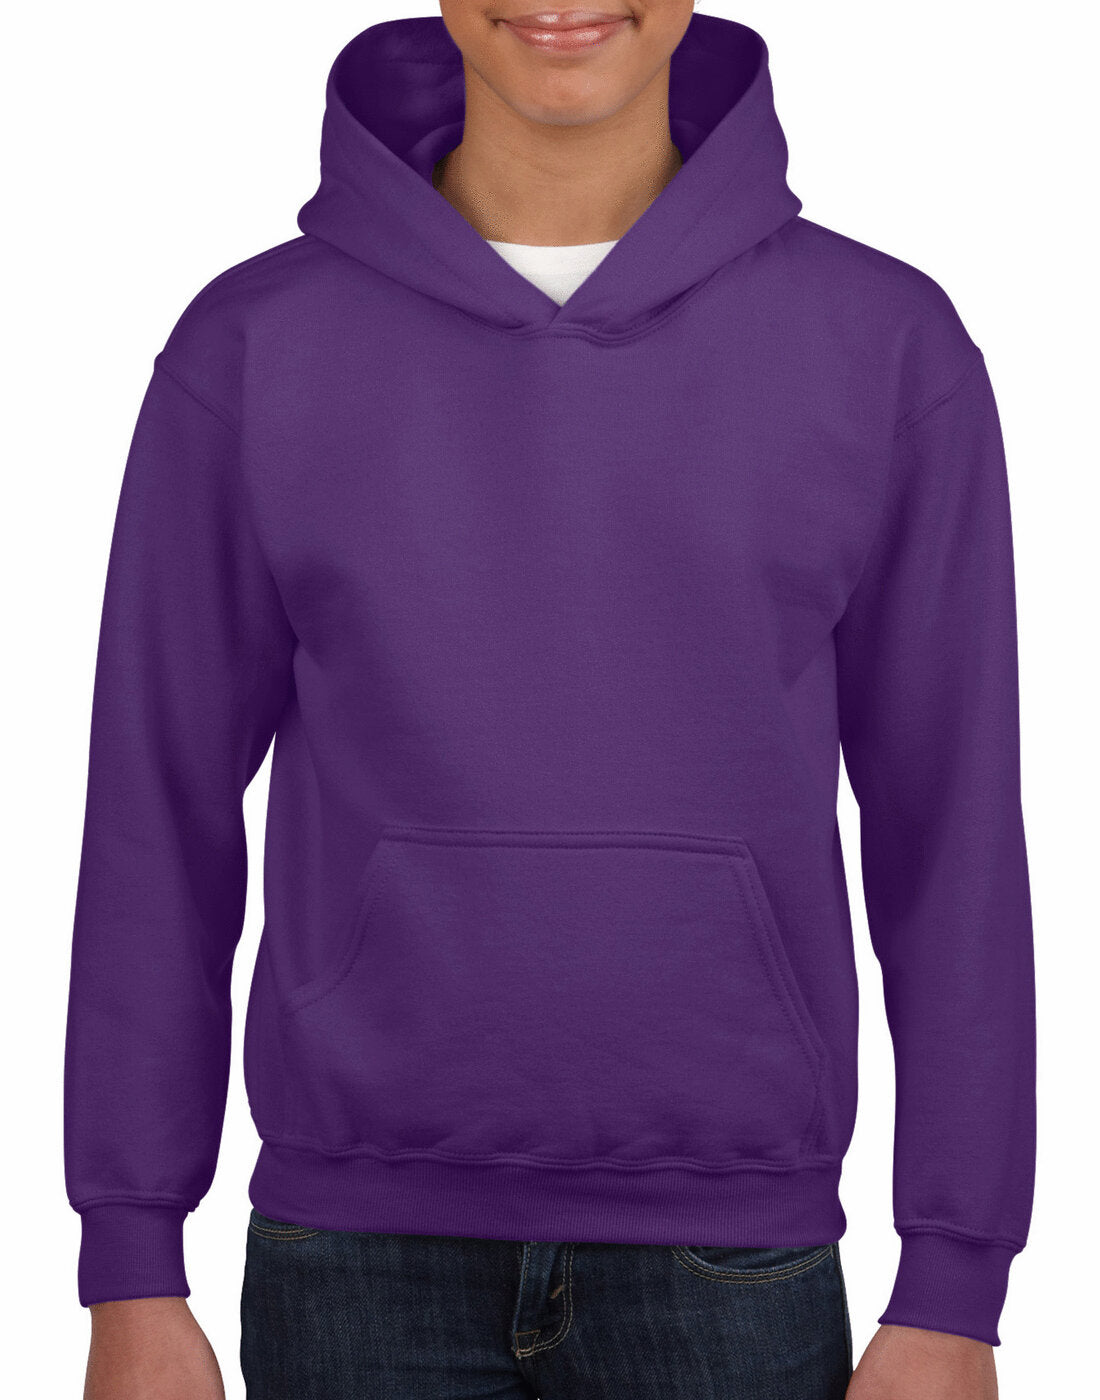 Gildan Kids Heavy Blend Hooded Sweatshirt - Purple